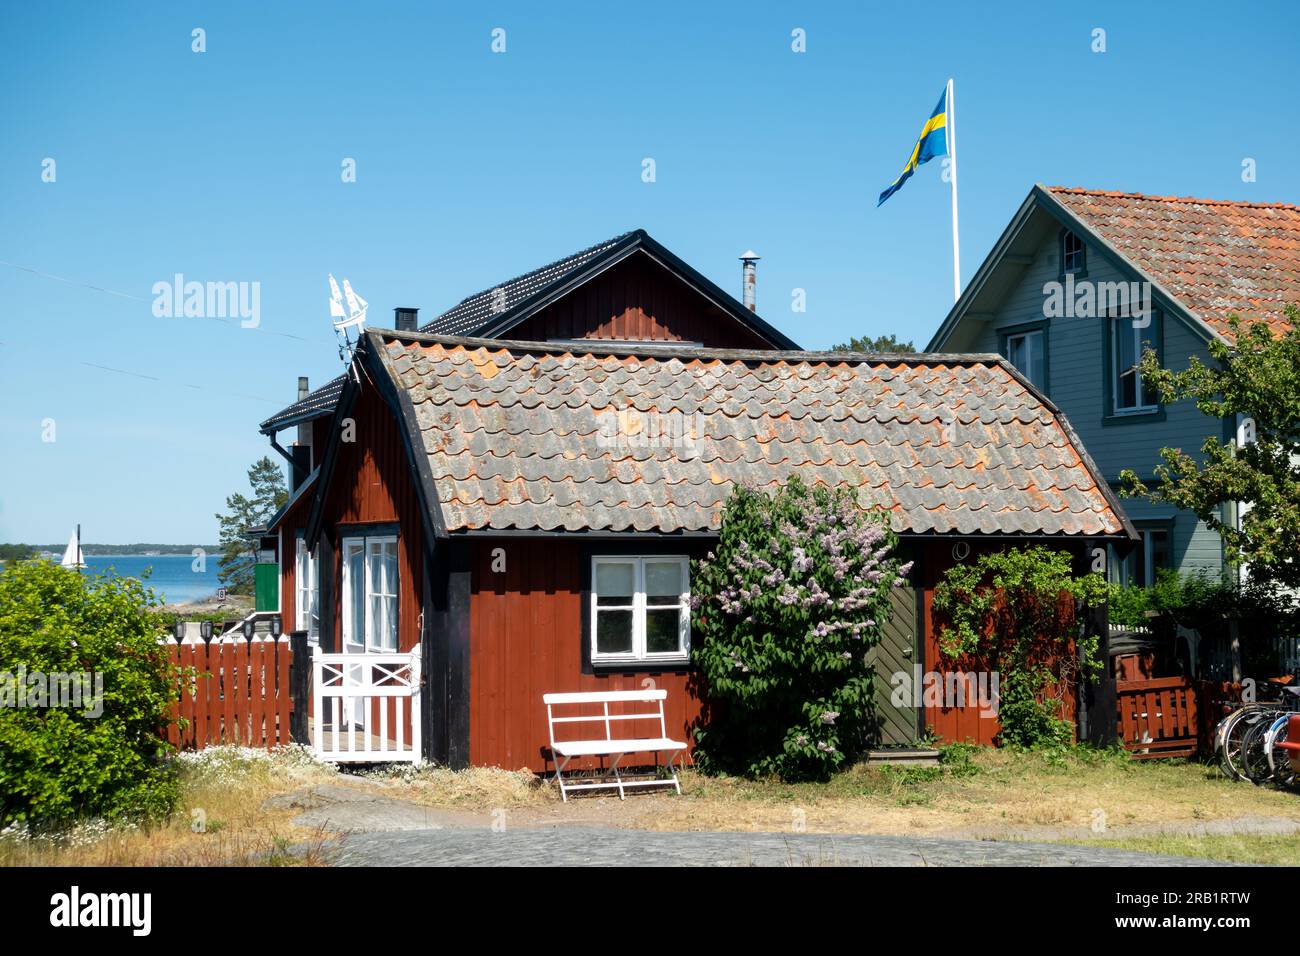 Tipica casa rossa di falu in Svezia con angoli bianchi su una pittoresca isola rurale di un villaggio di pescatori nell'arcipelago di Stoccolma con bandiera svedese Foto Stock